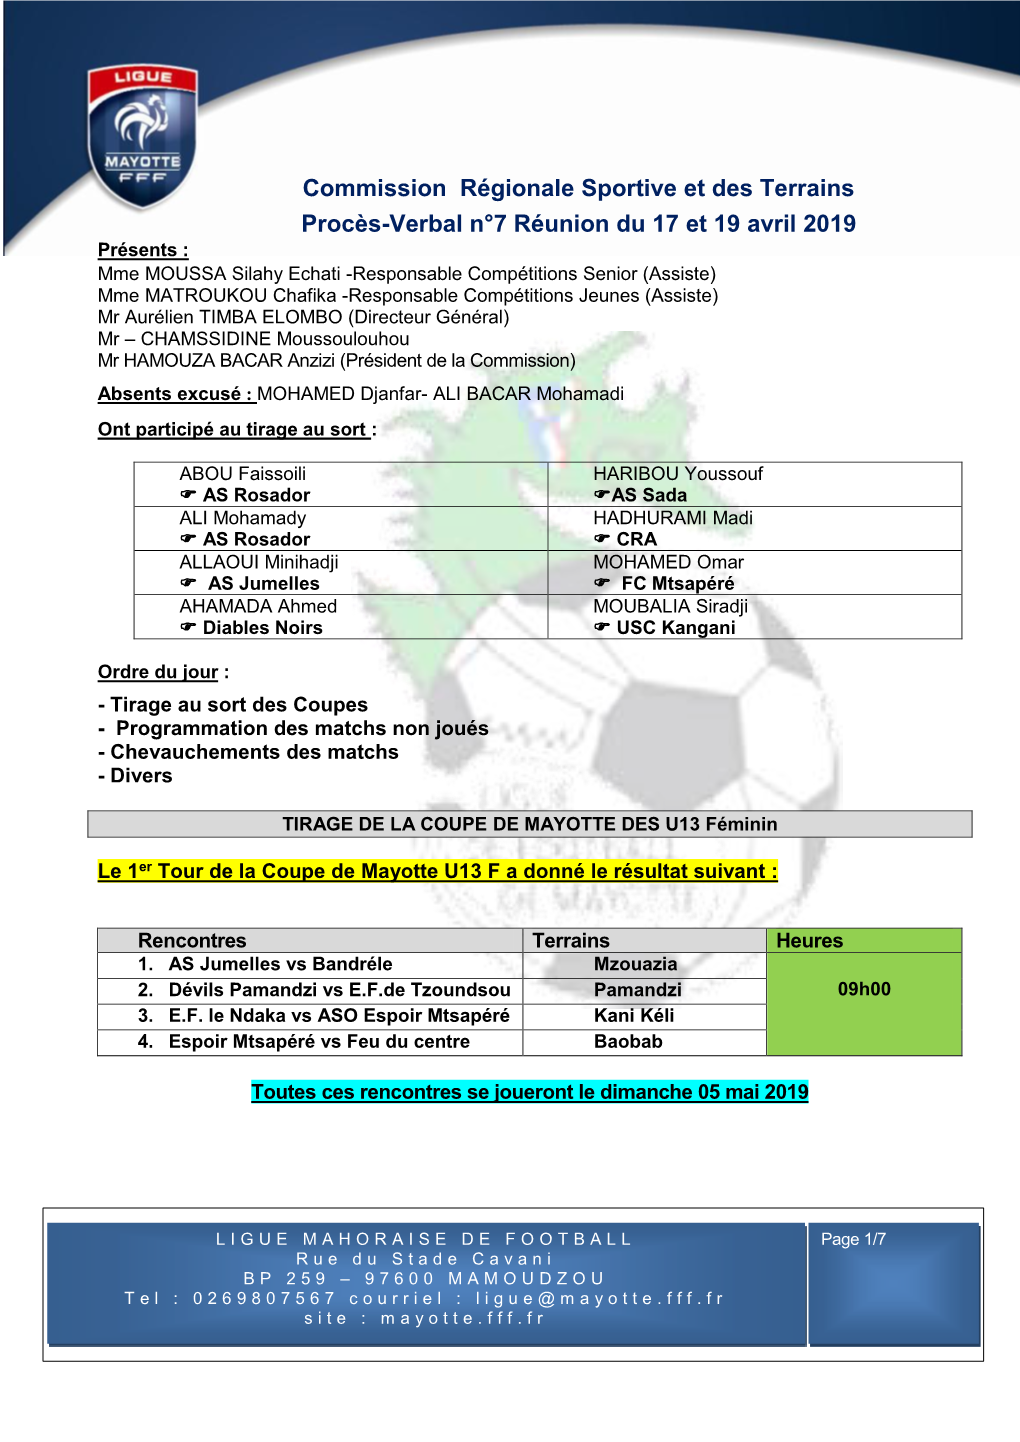 Commission Régionale Sportive Et Des Terrains Procès-Verbal N°7 Réunion Du 17 Et 19 Avril 2019